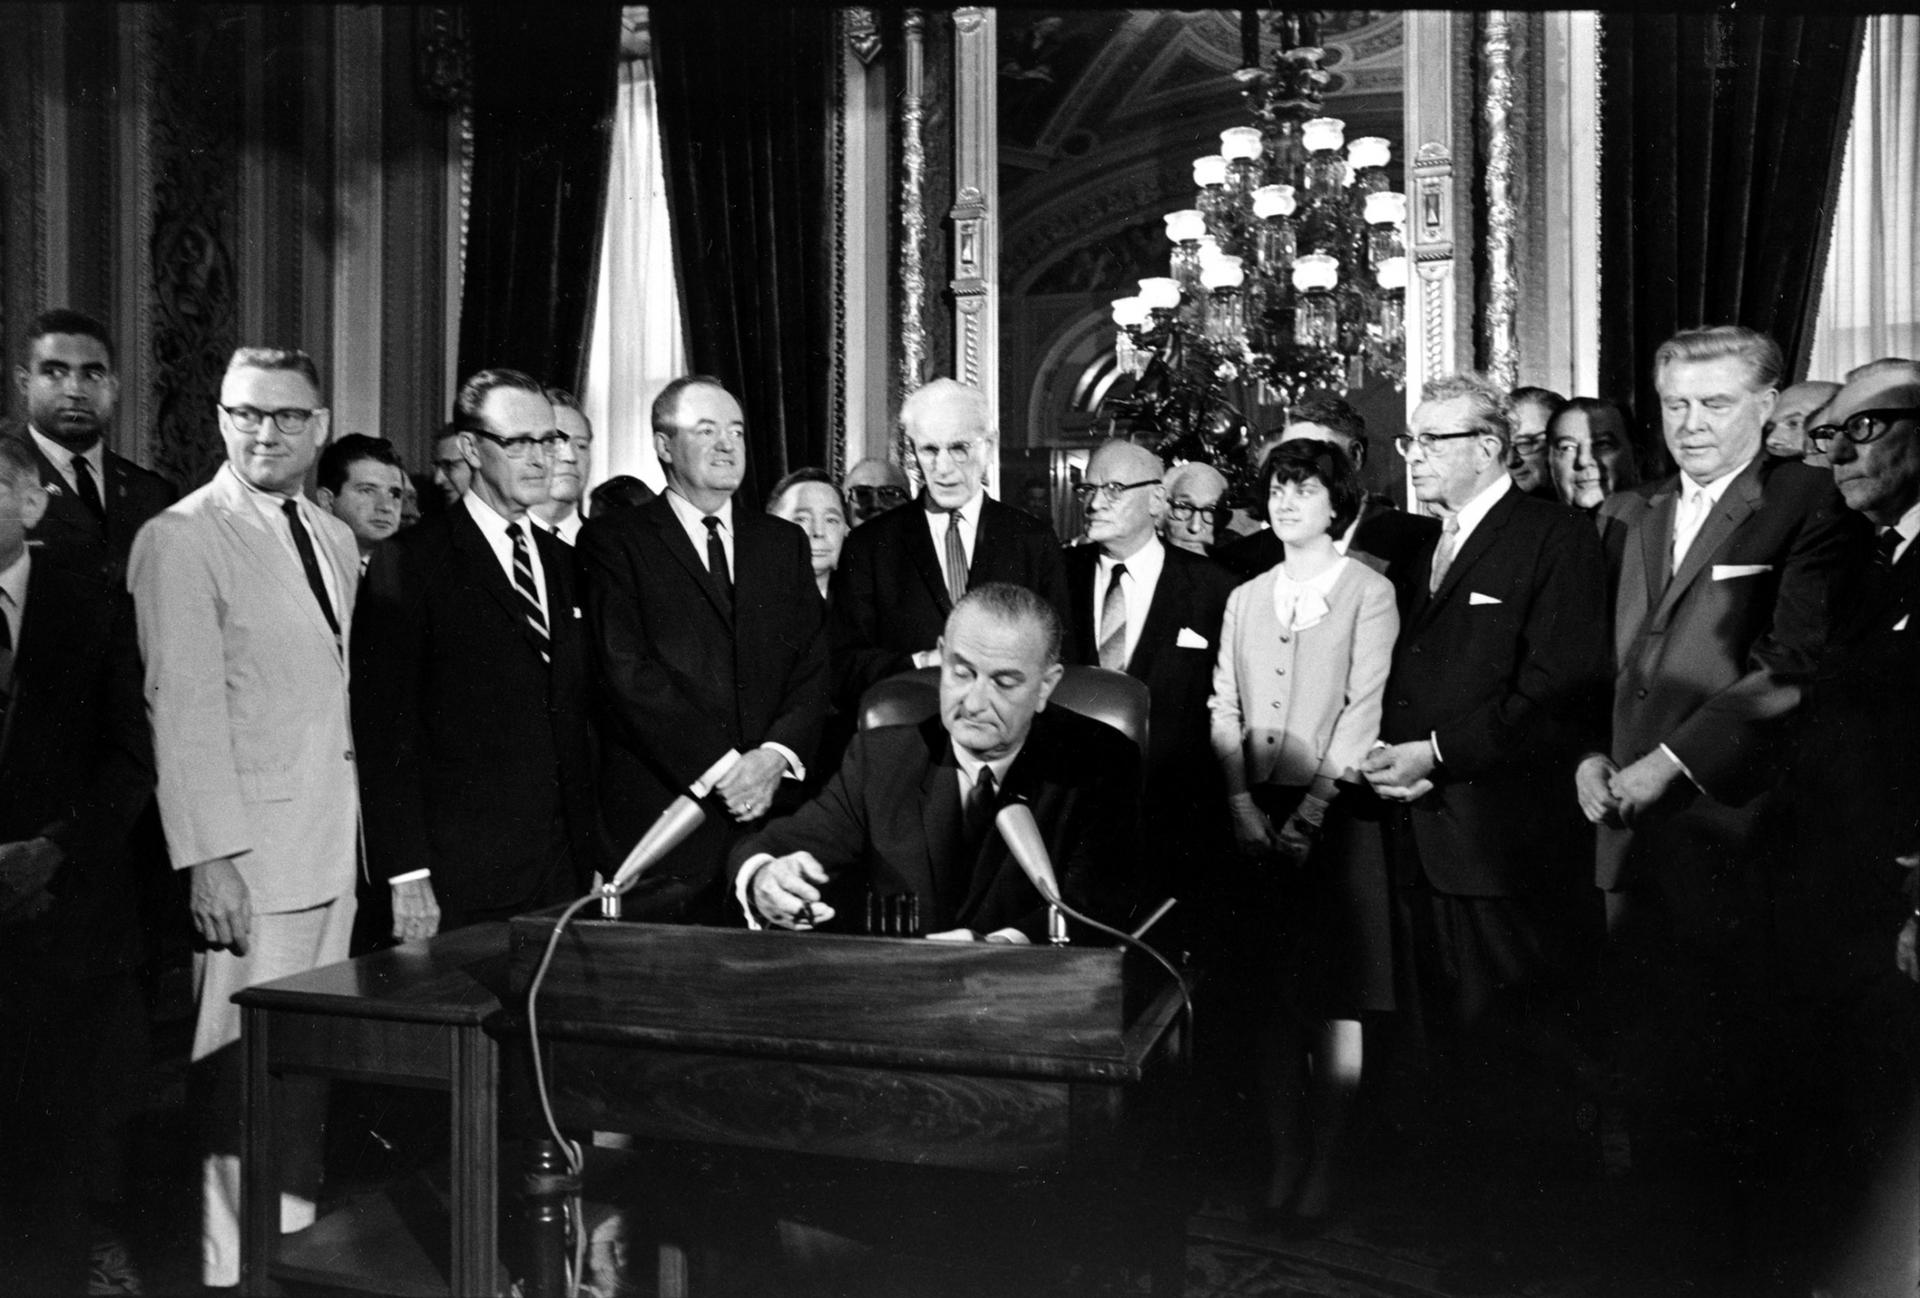 El Presidente Lyndon Johnson sentado en una mesa firmando un documento, aparece rodeado de personas.